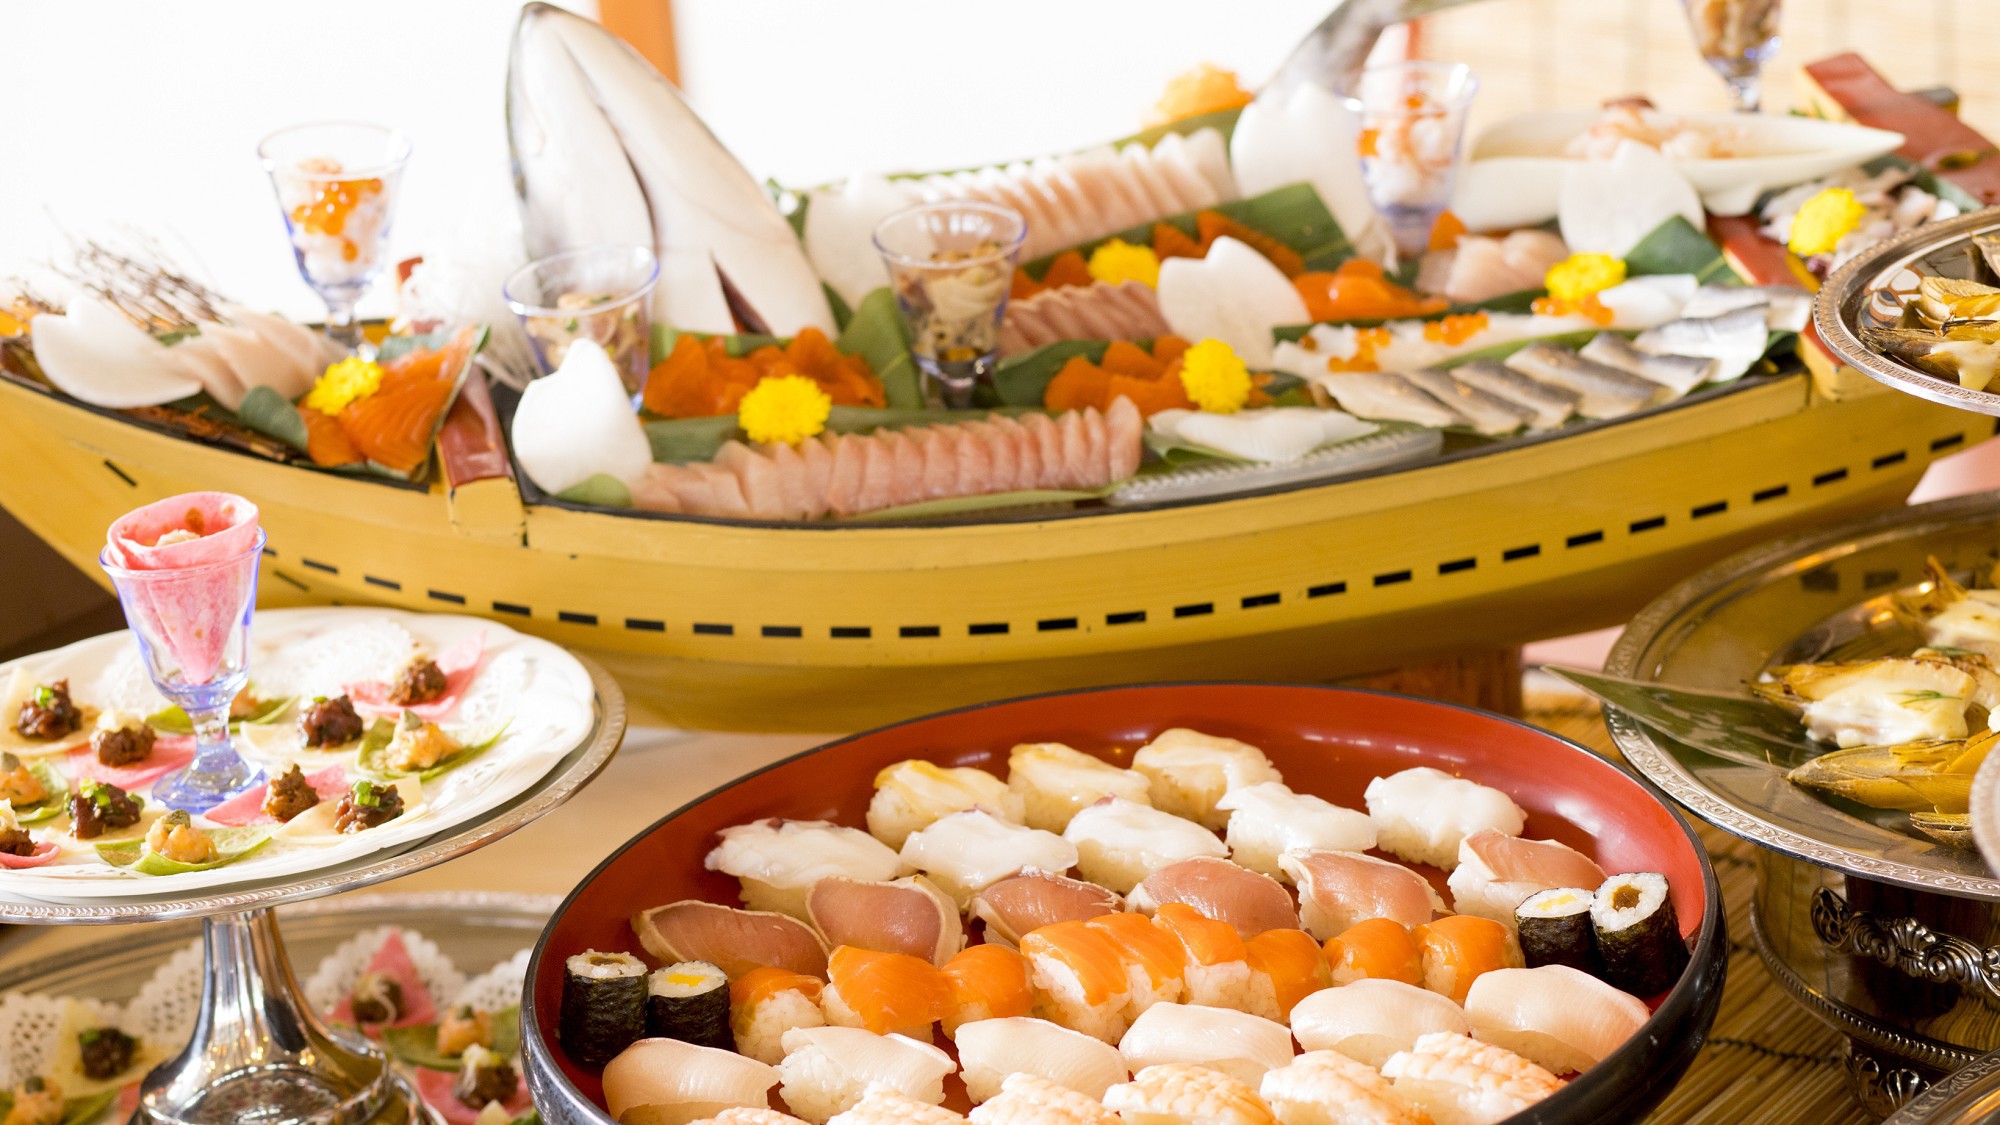 【夕食】信州サーモンを使用した握り寿司一式と、信州サーモンのちらし寿司が日替わりで夕食に登場